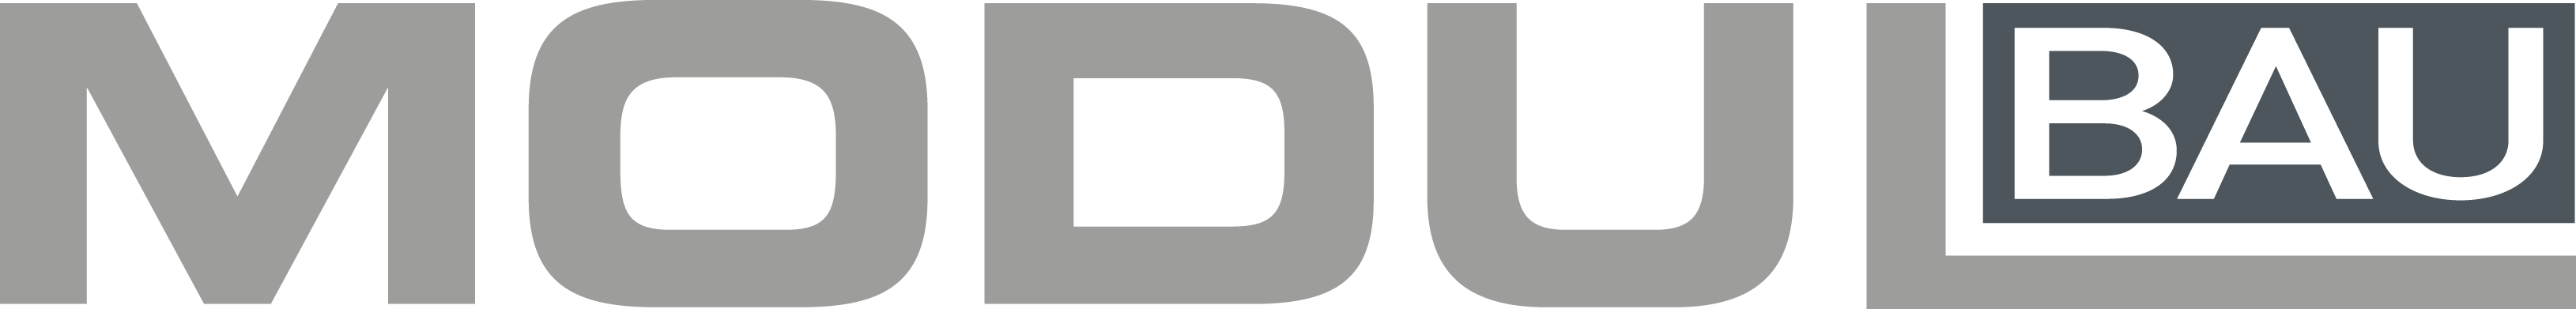 Modulbau Logo